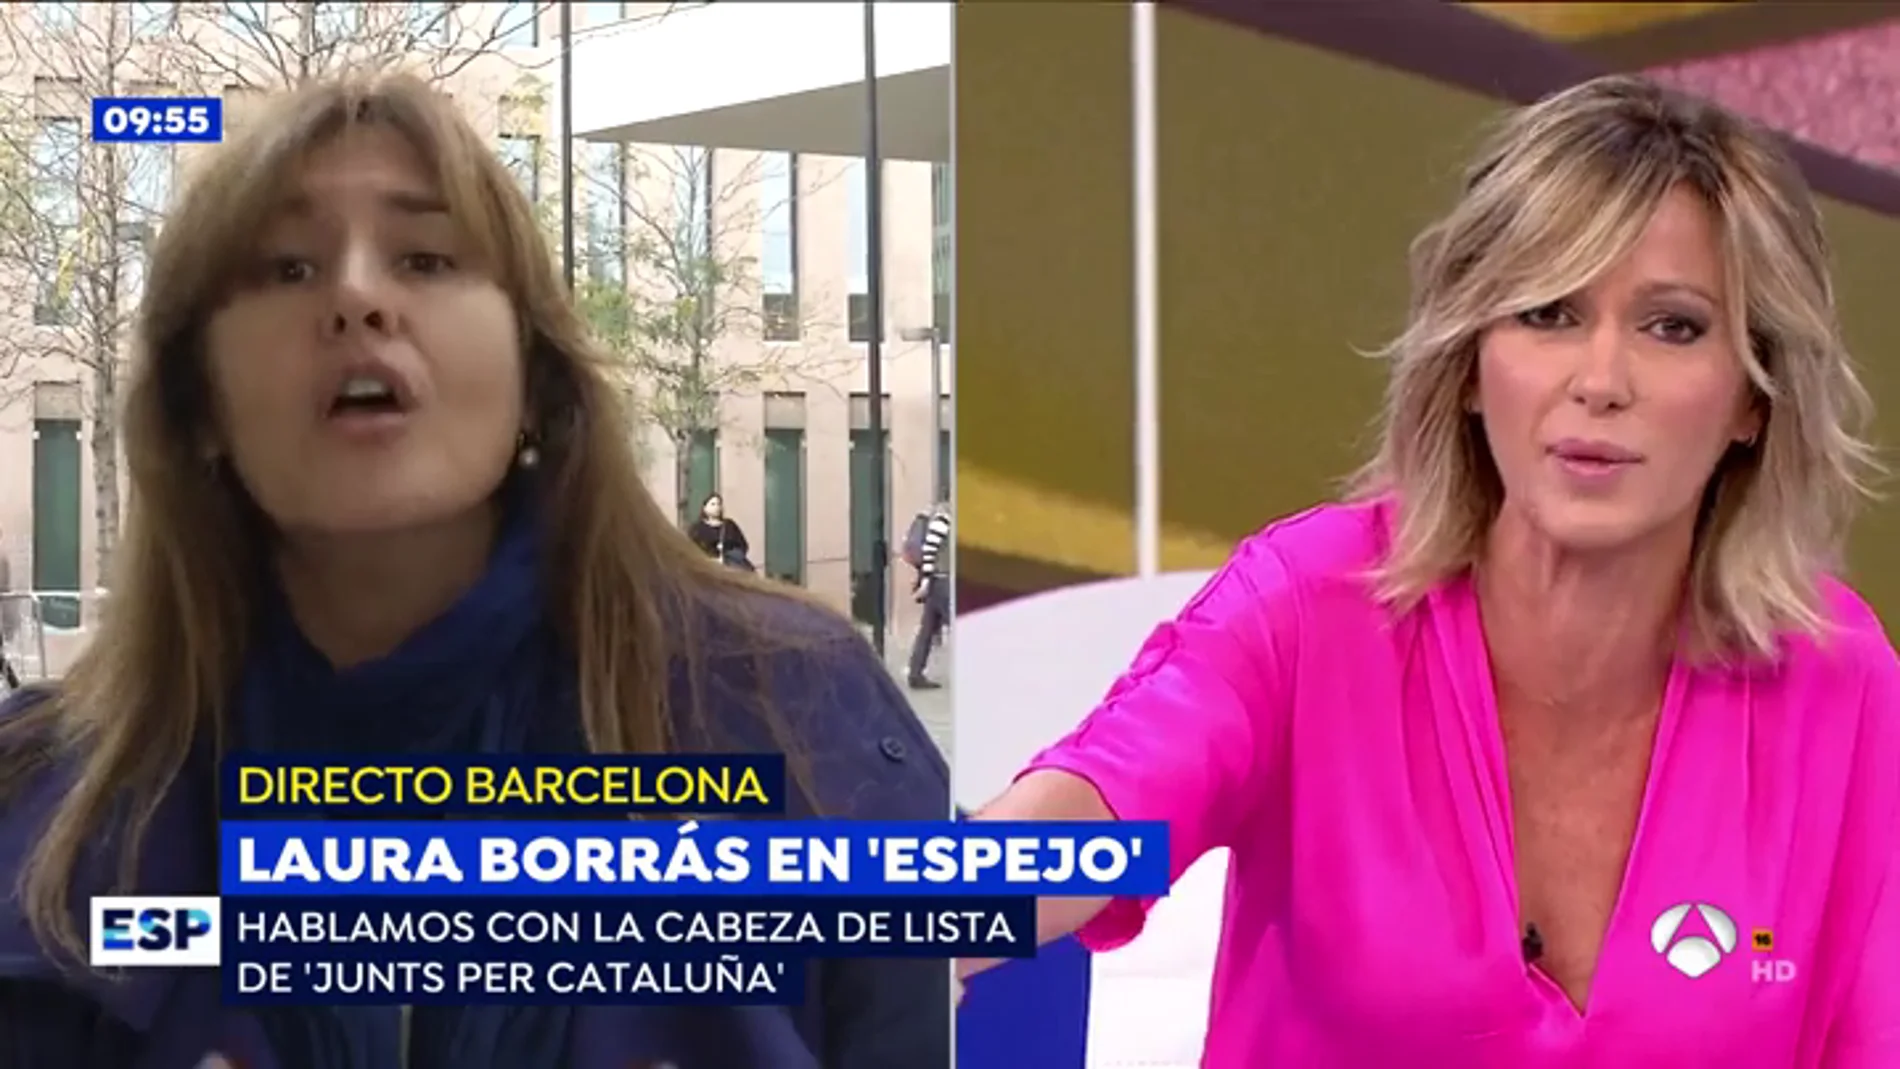 El rifirrafe de Susanna Griso a Laura Borrás: "No nos ponemos de acuerdo ni en mi apellido"